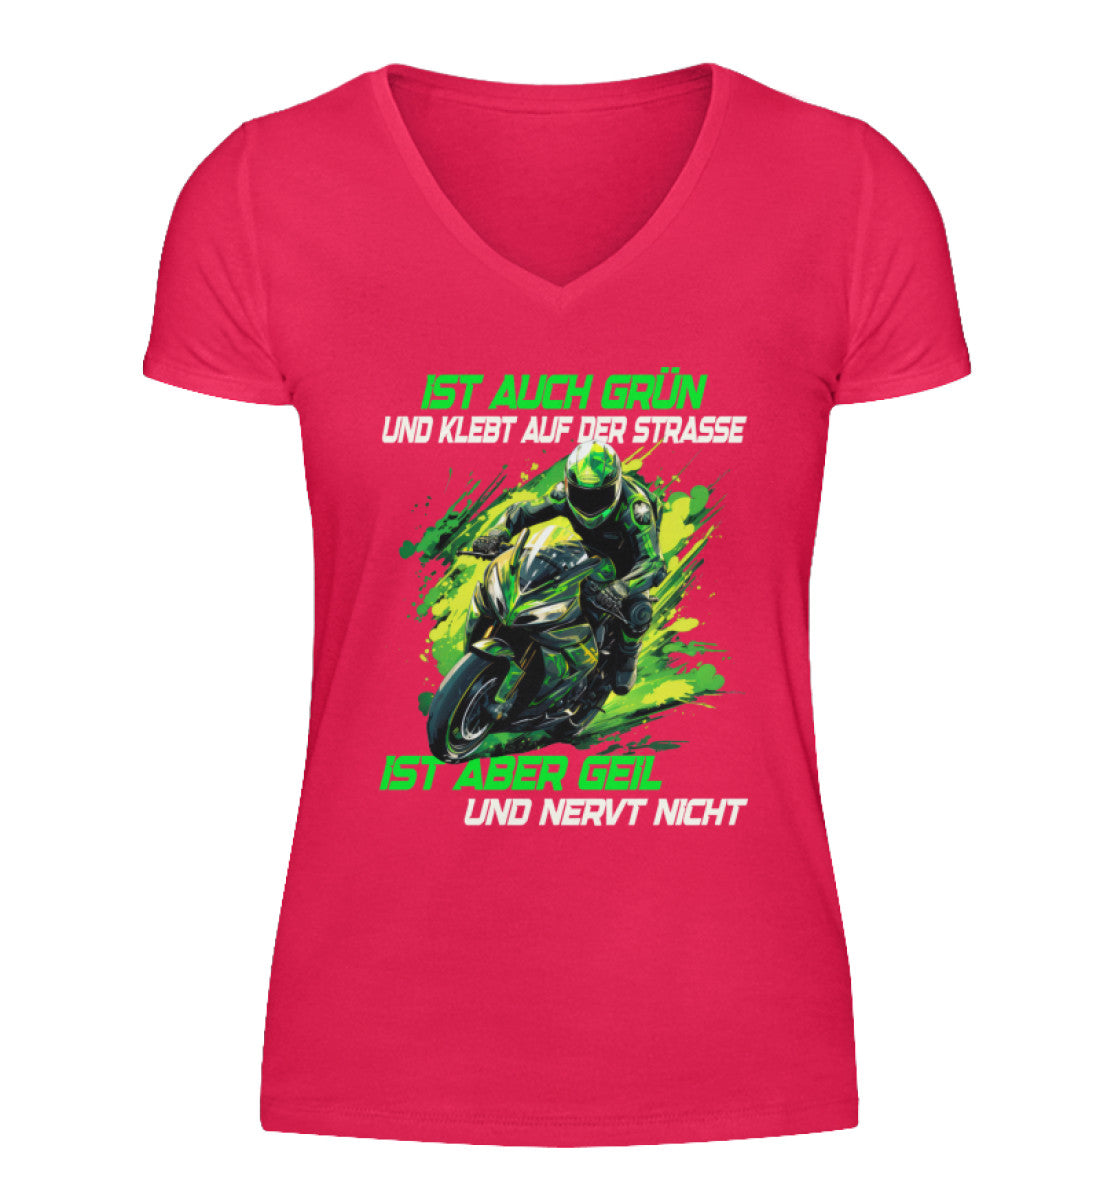 Ein T-Shirt mit V-Ausschnitt für Motorradfahrerinnen von Wingbikers mit dem Aufdruck, Supersportler - Ist auch grün und klebt auf der Straße, ist aber geil und nervt nicht, in pink.